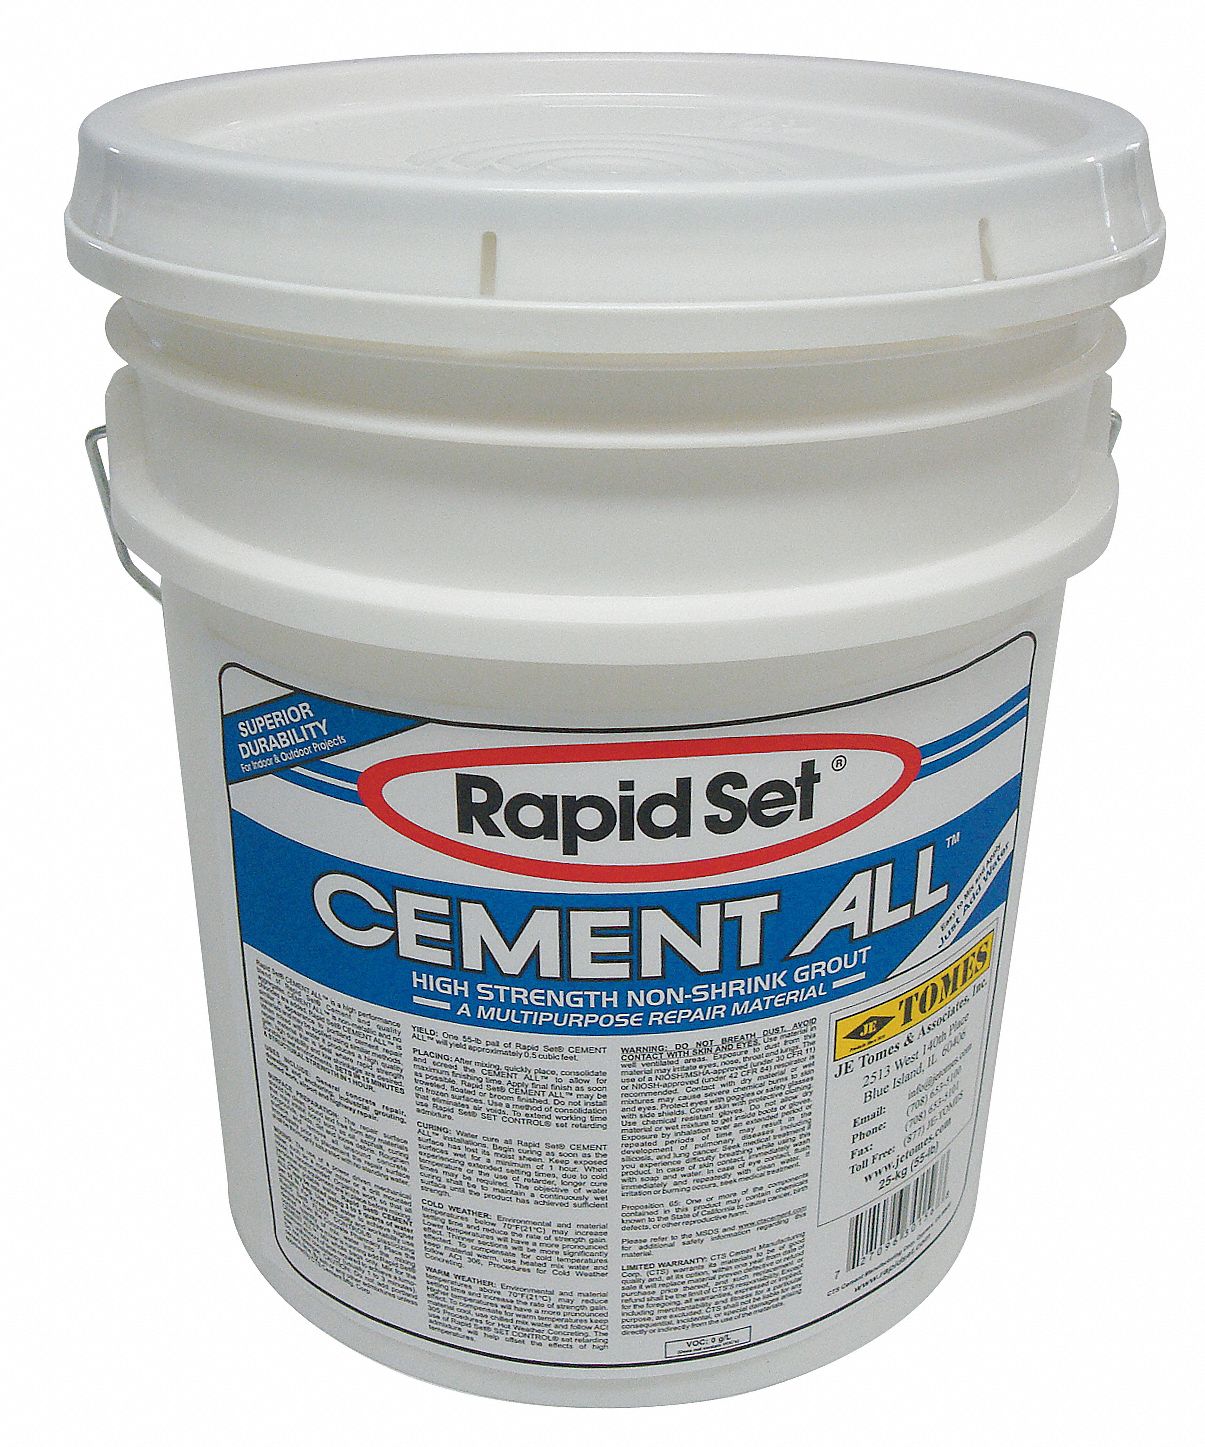 Concrete Repair Compound: Rapid Set, Cement, 55 lb Container Size, Pail, Gray